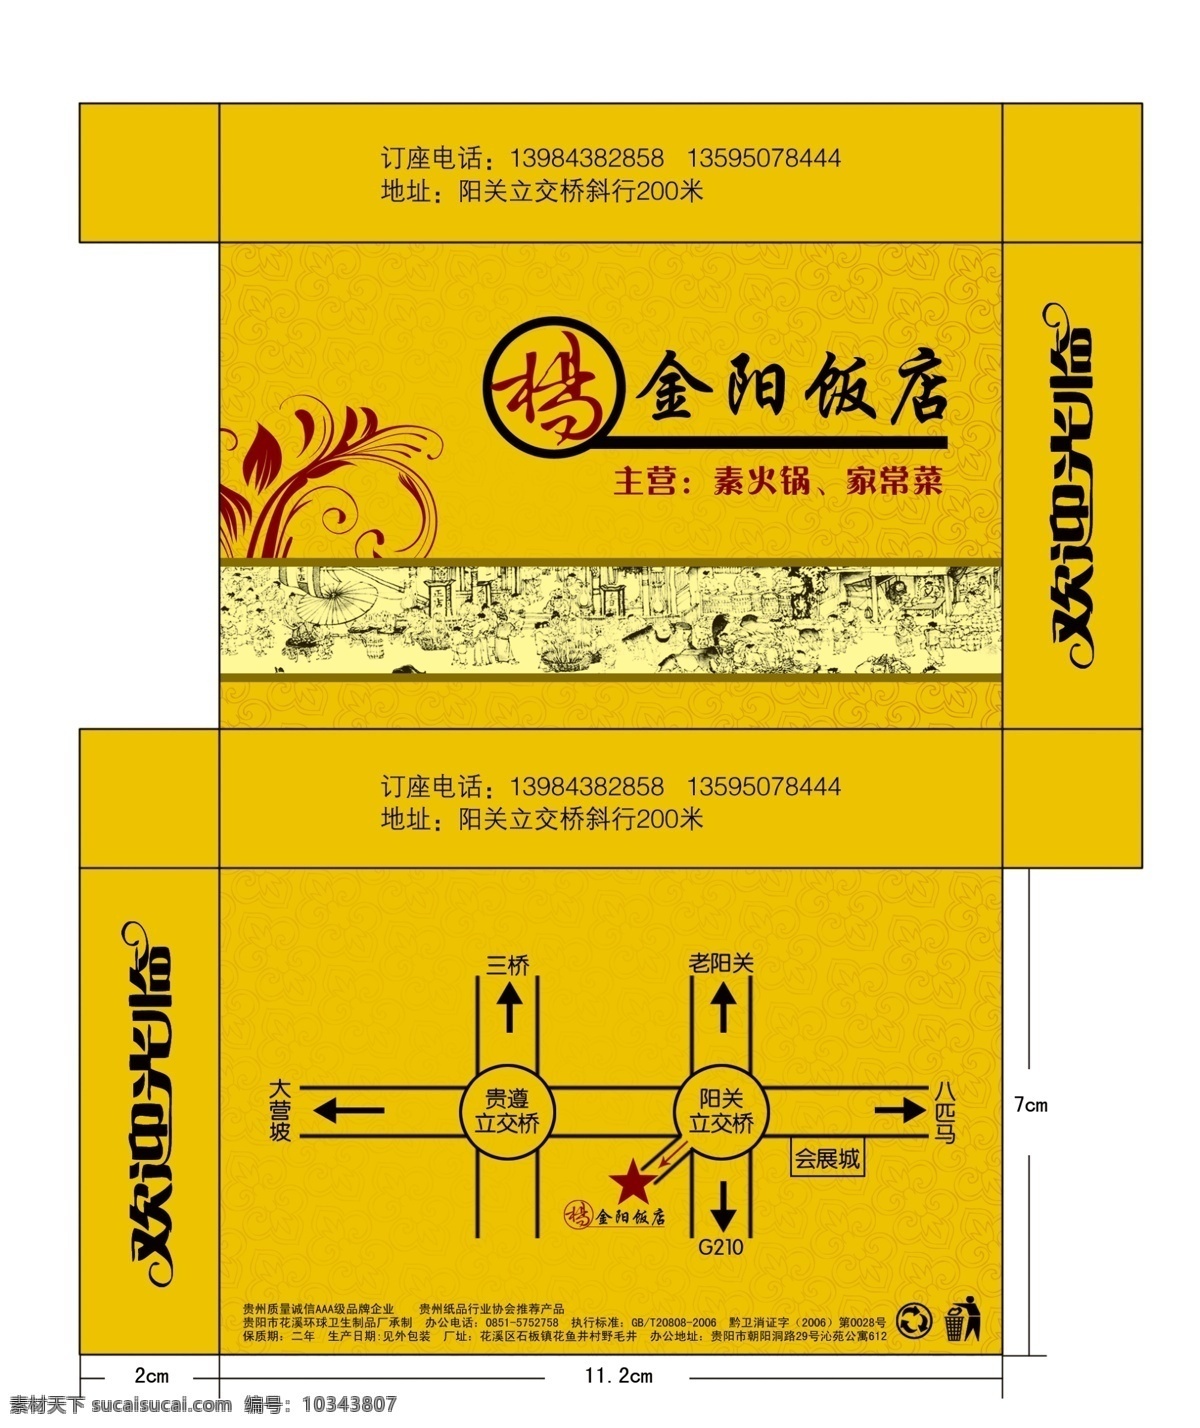 金阳 饭店 纸巾 盒 金阳饭店 纸巾盒 盒子 纸 餐巾纸 包装 包装设计 广告设计模板 源文件